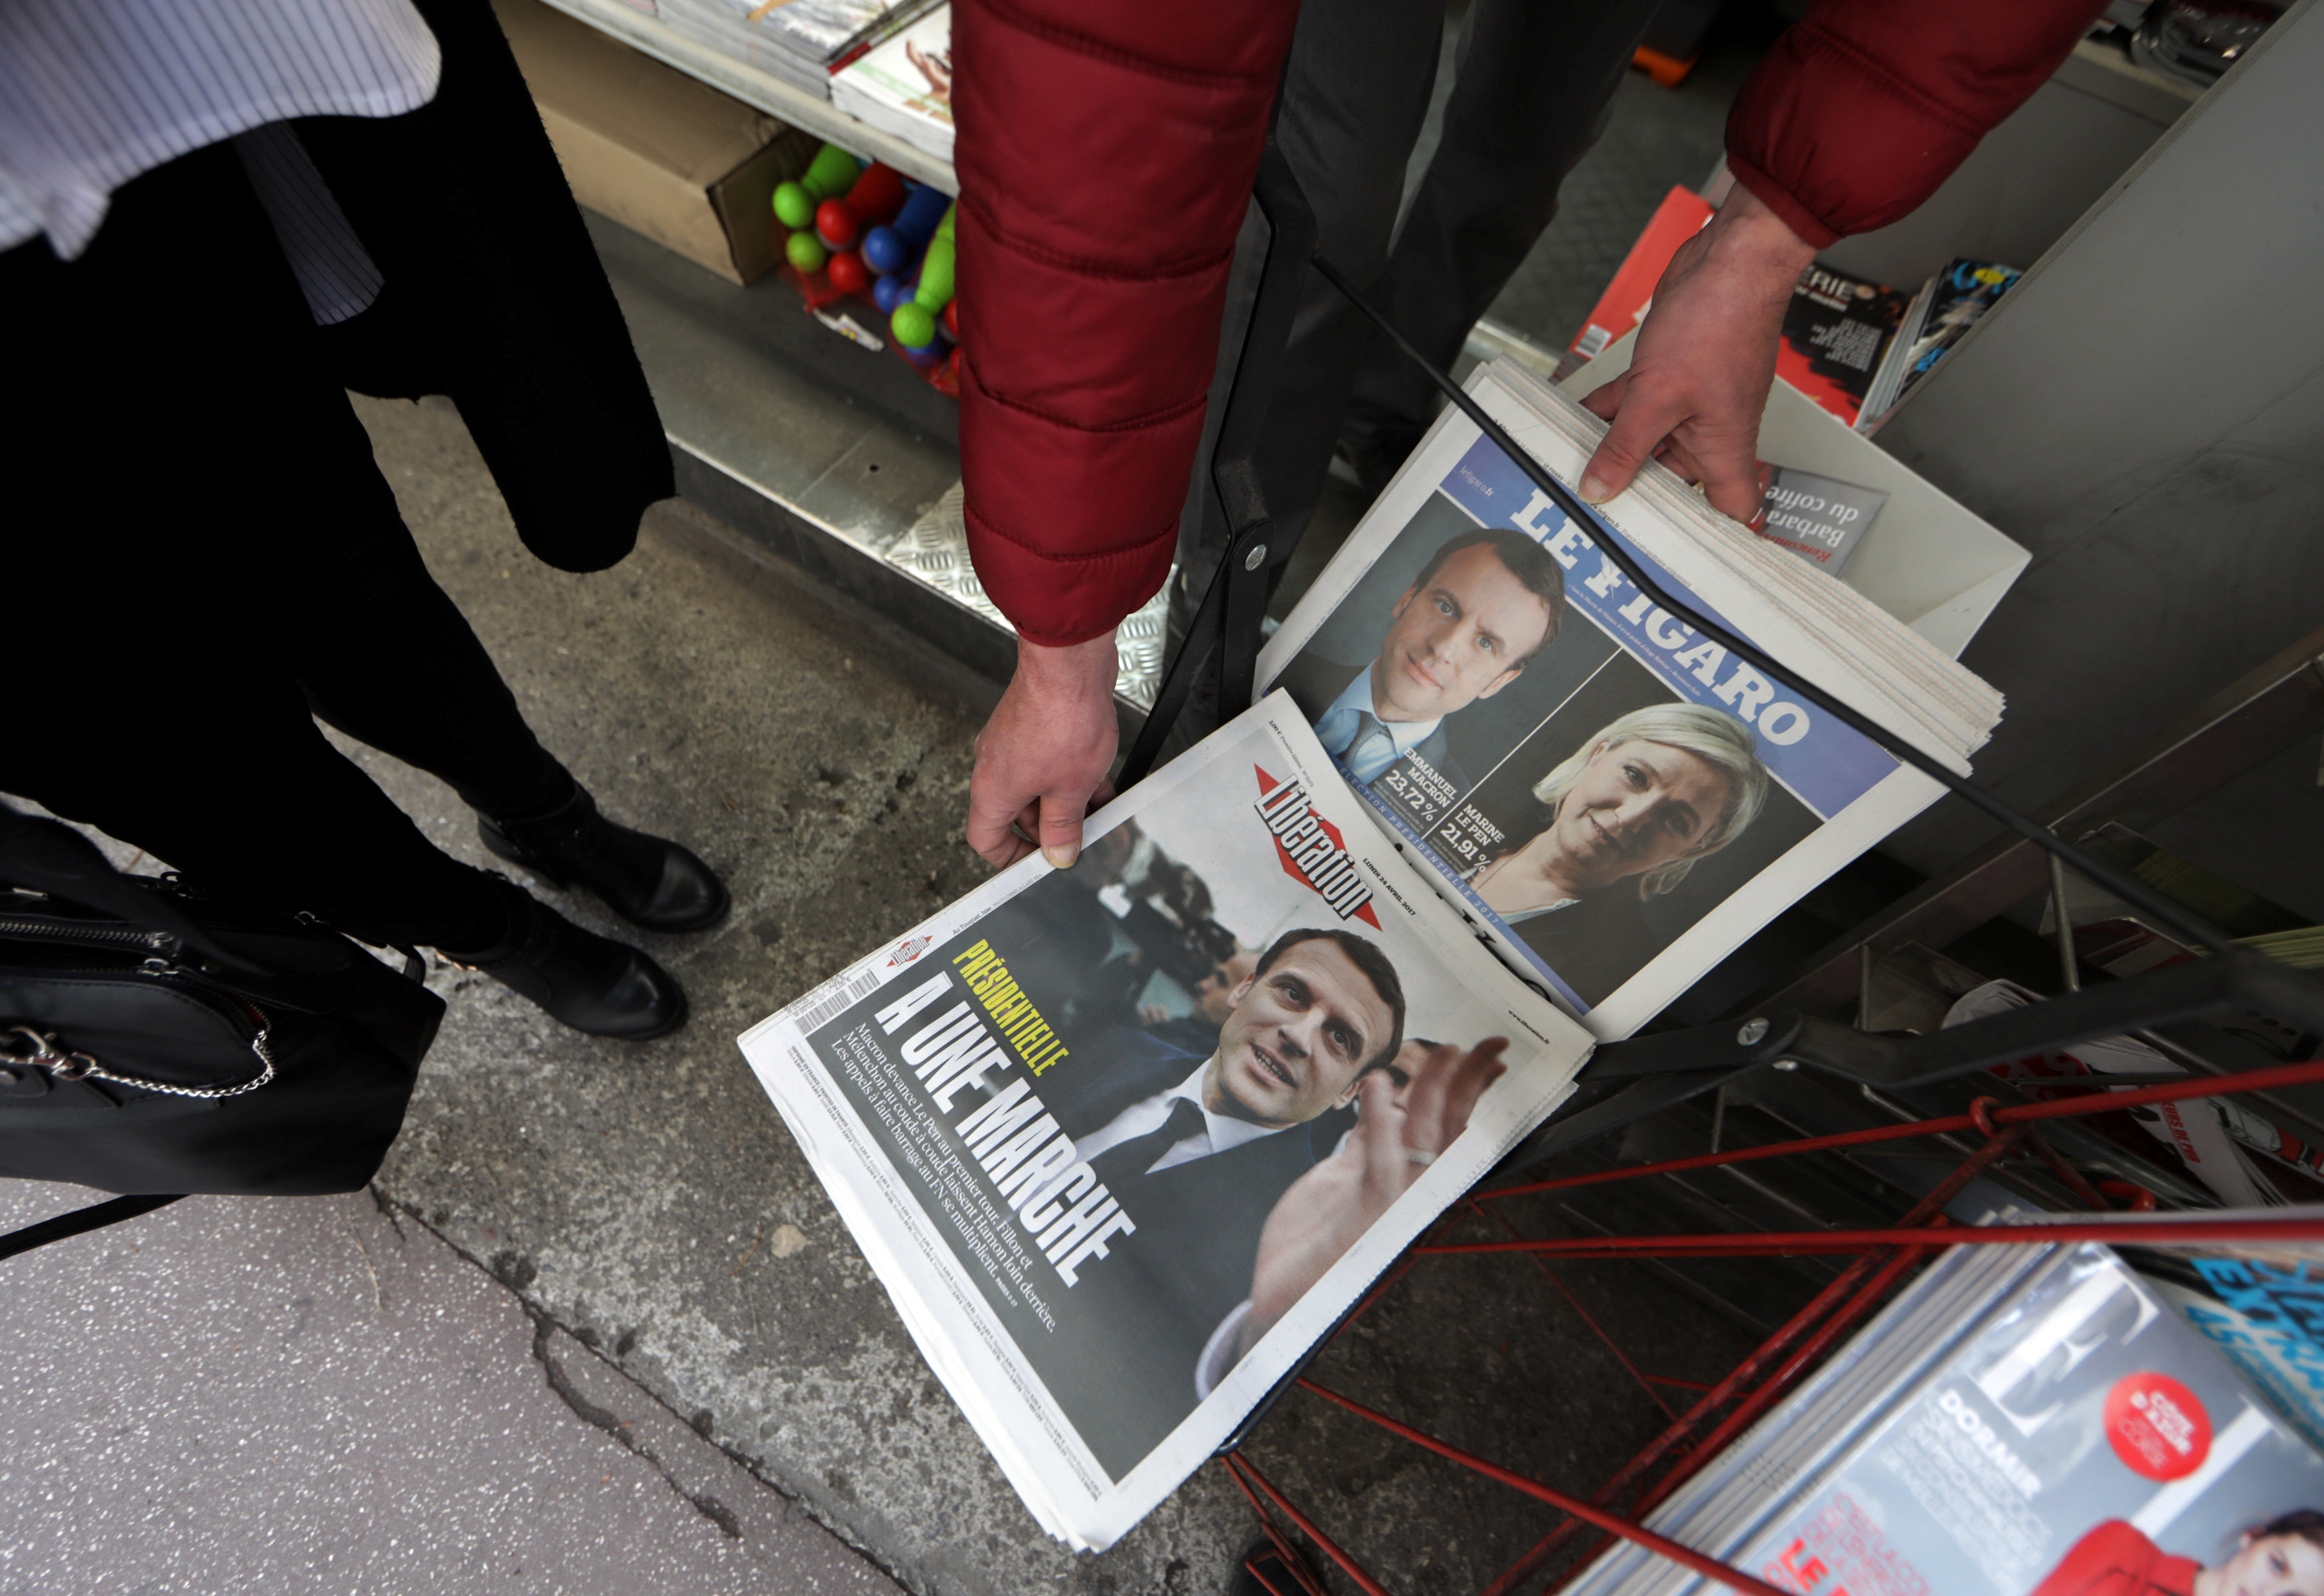 ماكرون ولوبان يتصدرون الصحف الفرنسية